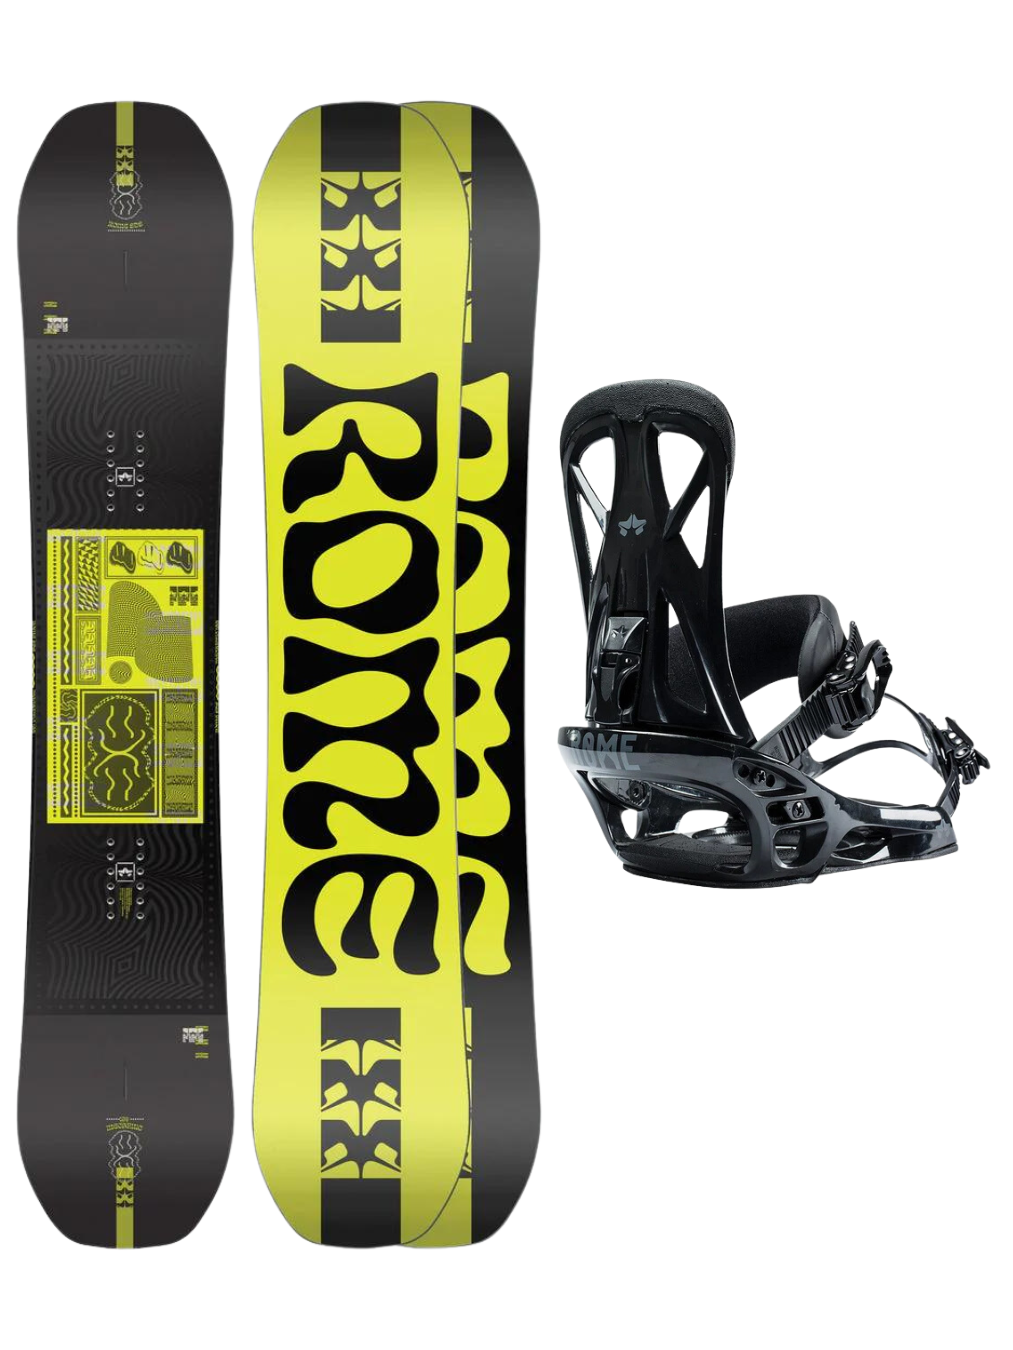 Pack snowboard : Rome Mechanic 156 + Rome United | Boutique de snowboard | Collection_Zalando | Nouveaux produits | Packs Snowboard : Planche + Fixation | Produits les plus récents | Produits les plus vendus | surfdevils.com